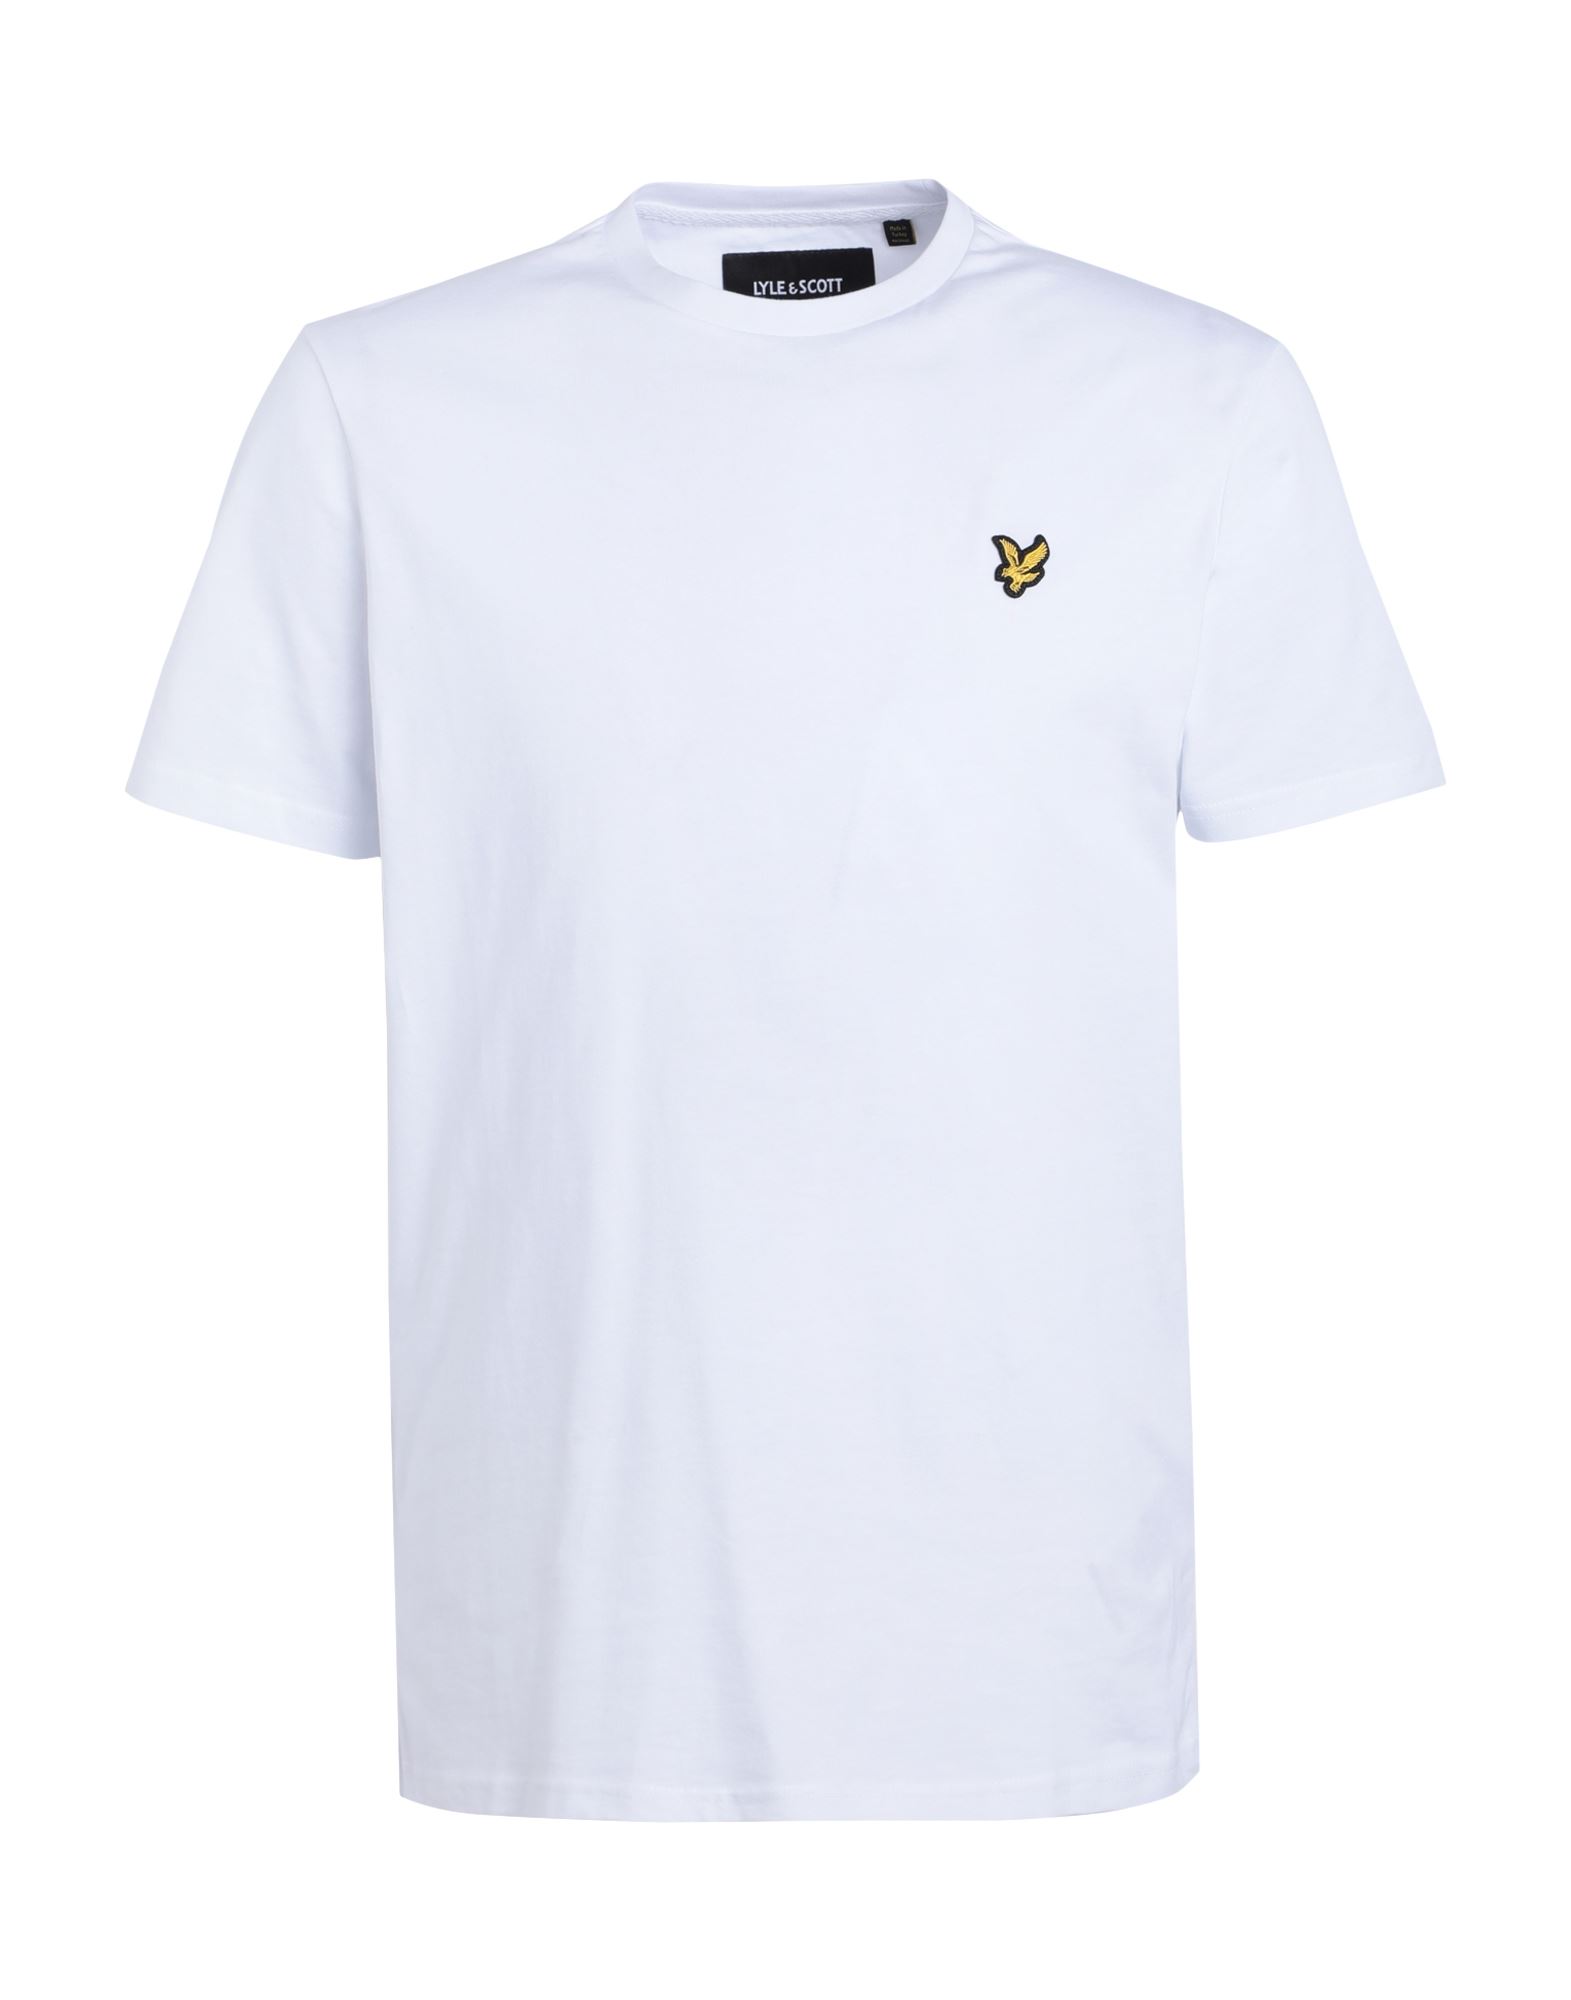 Lyle & Scott Man T-shirt White Size Xl Cotton